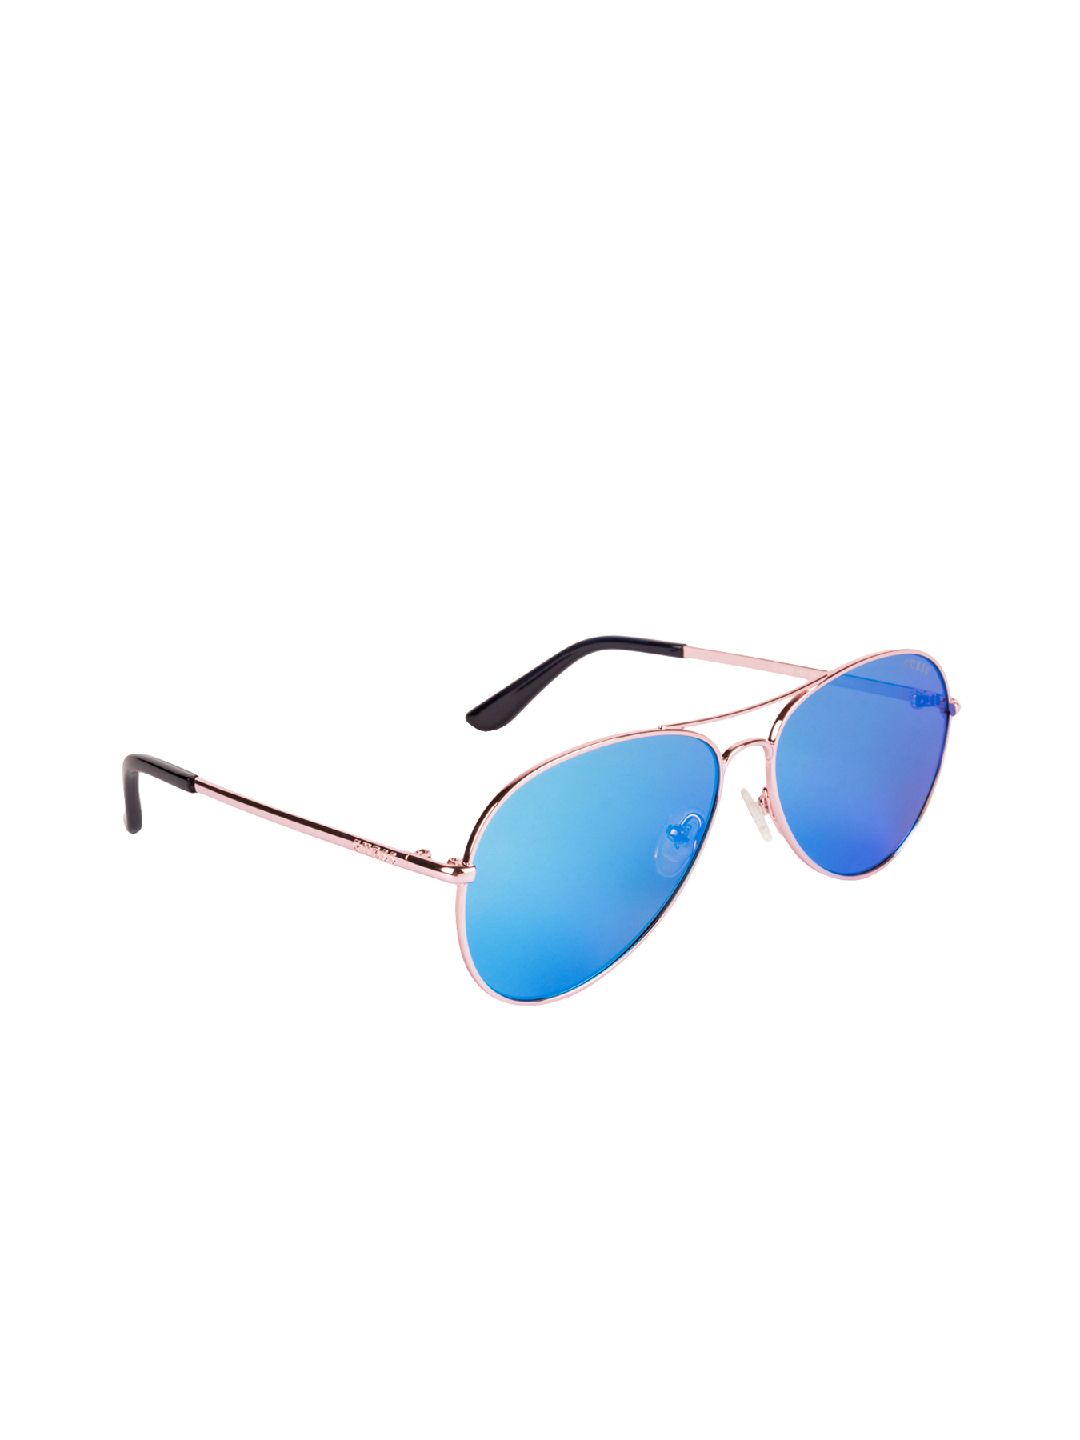 GUESS Women Aviator Sunglasses GU6925 58 28X Price in India